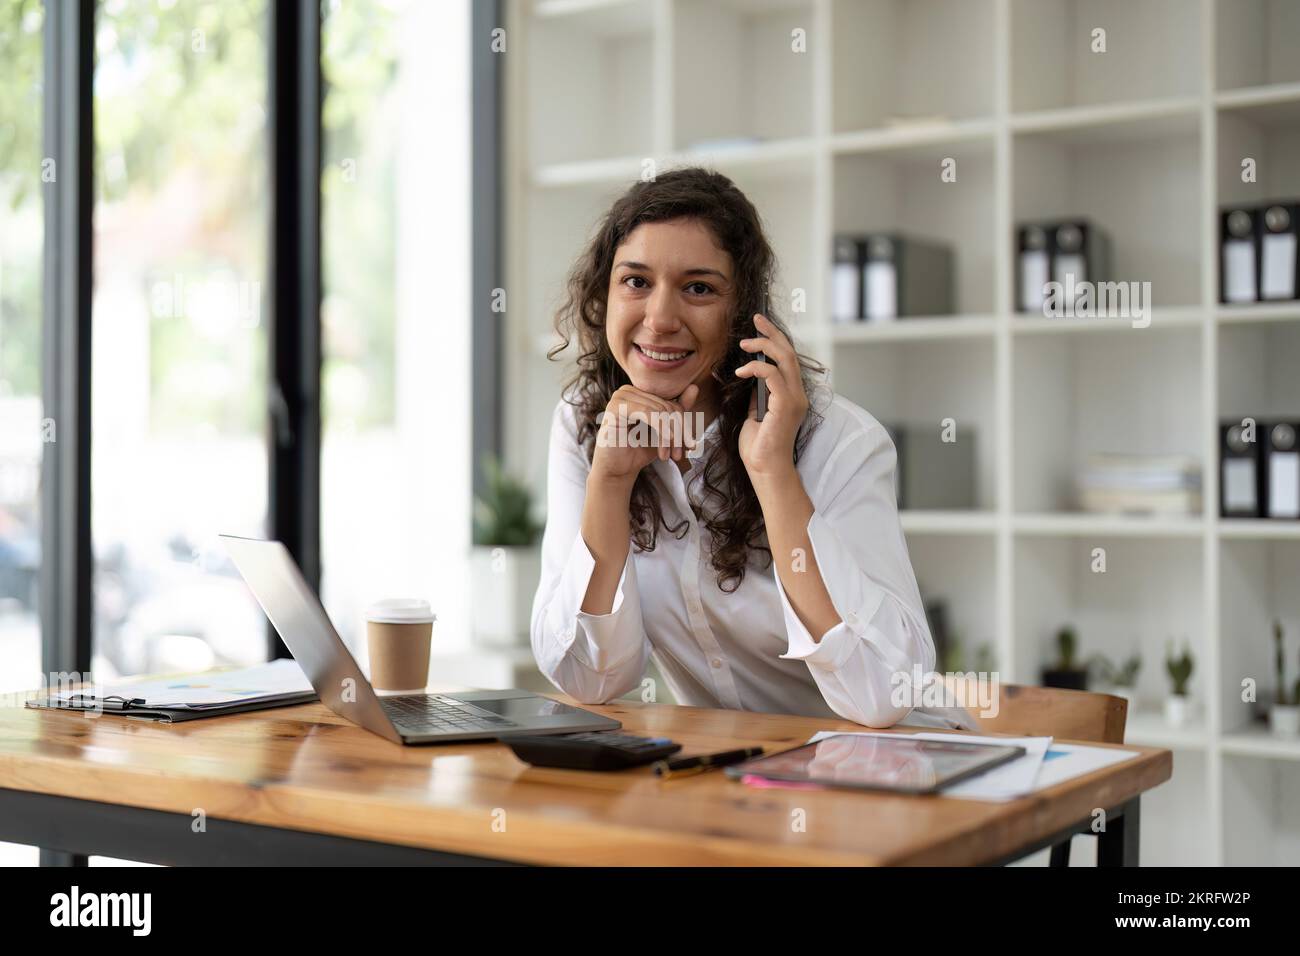 Retrato mujer de negocios trabajando de forma remota, mirando la cámara, hablando con un smartphone. Foto de stock